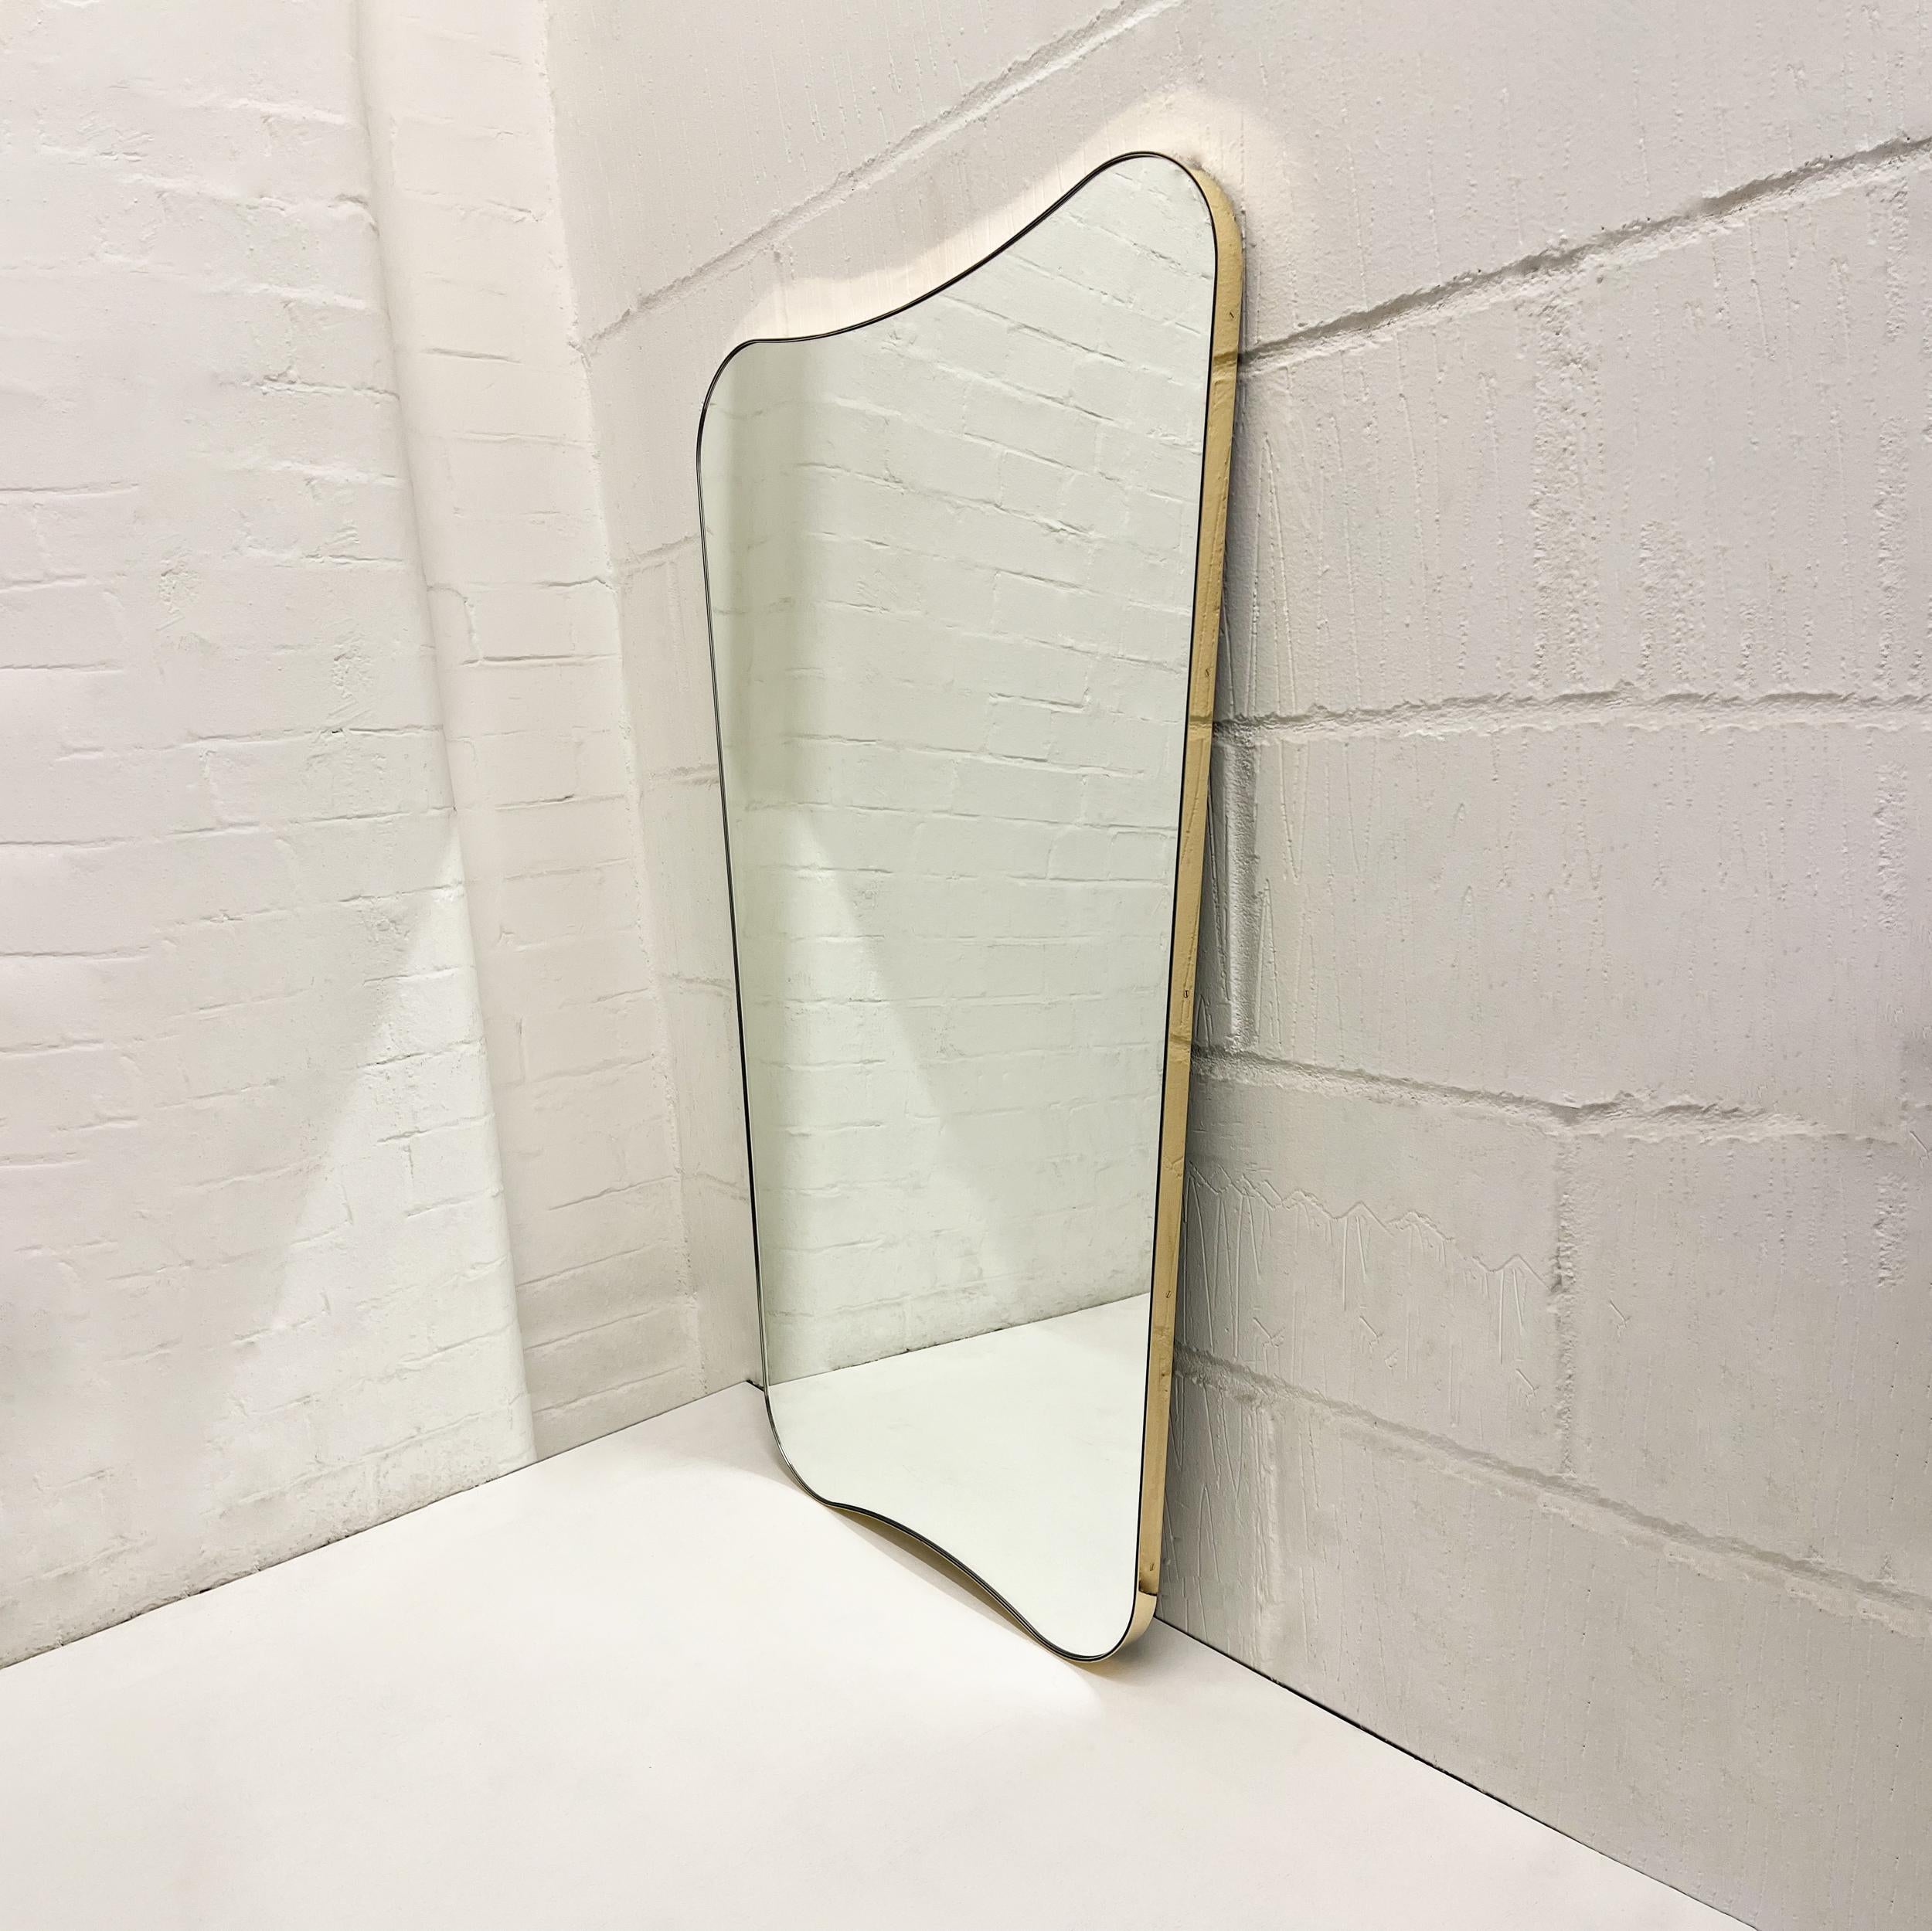 Miroir élégant avec un cadre minimaliste en laiton inspiré par le célèbre travail du designer italien Gio Ponti. Fabriqué à la main à Londres, au Royaume-Uni, selon des normes de qualité très élevées, en laiton massif pur.

Dimensions du miroir : H